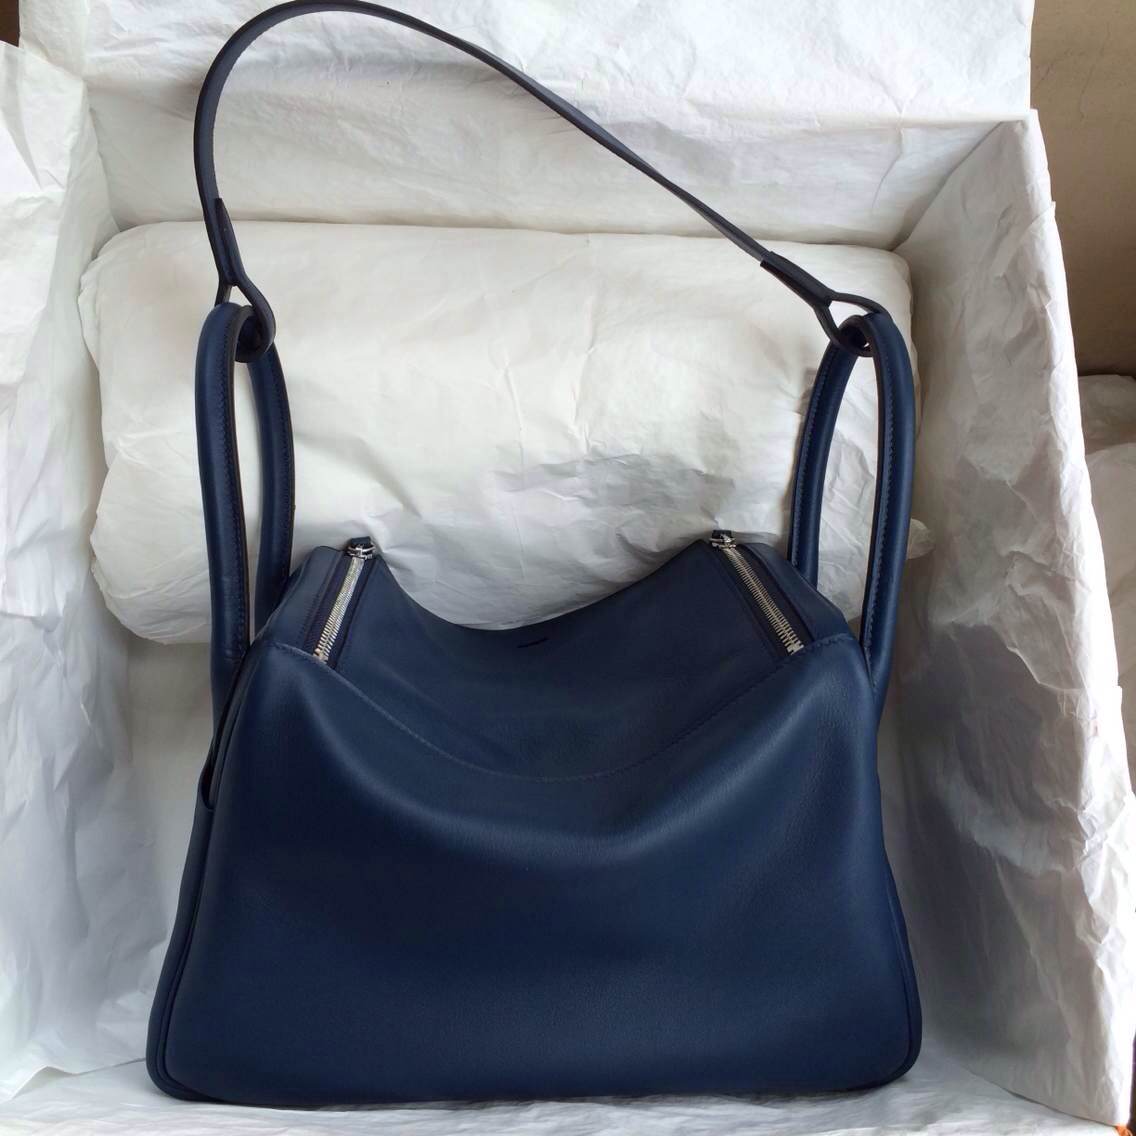 Popular Hermes Lindy Bag 7K Blue Saphir Swift Leather Silver Hardware